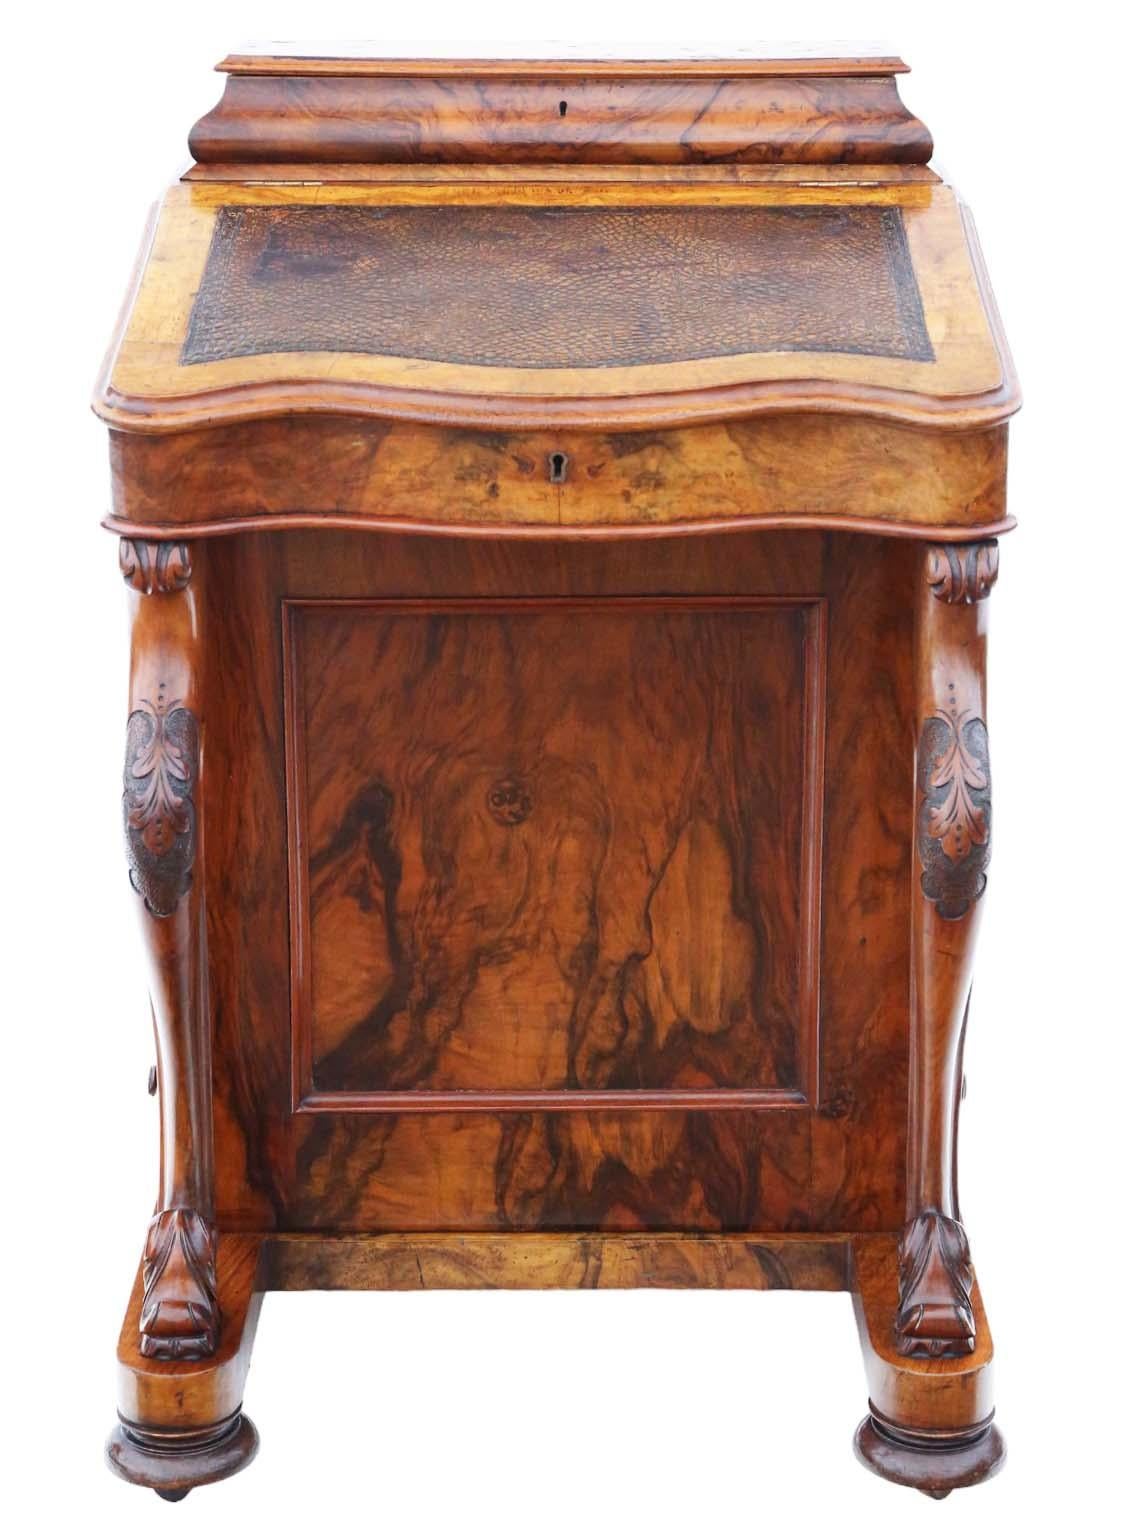 Wir präsentieren einen exquisiten viktorianischen Davenport-Schreibtisch aus Grat- und Nussbaumholz, der auf etwa 1870 zurückgeht. Dieses charmante Stück strahlt Alter und Charakter aus, was es zu einem seltenen und begehrten Fund für